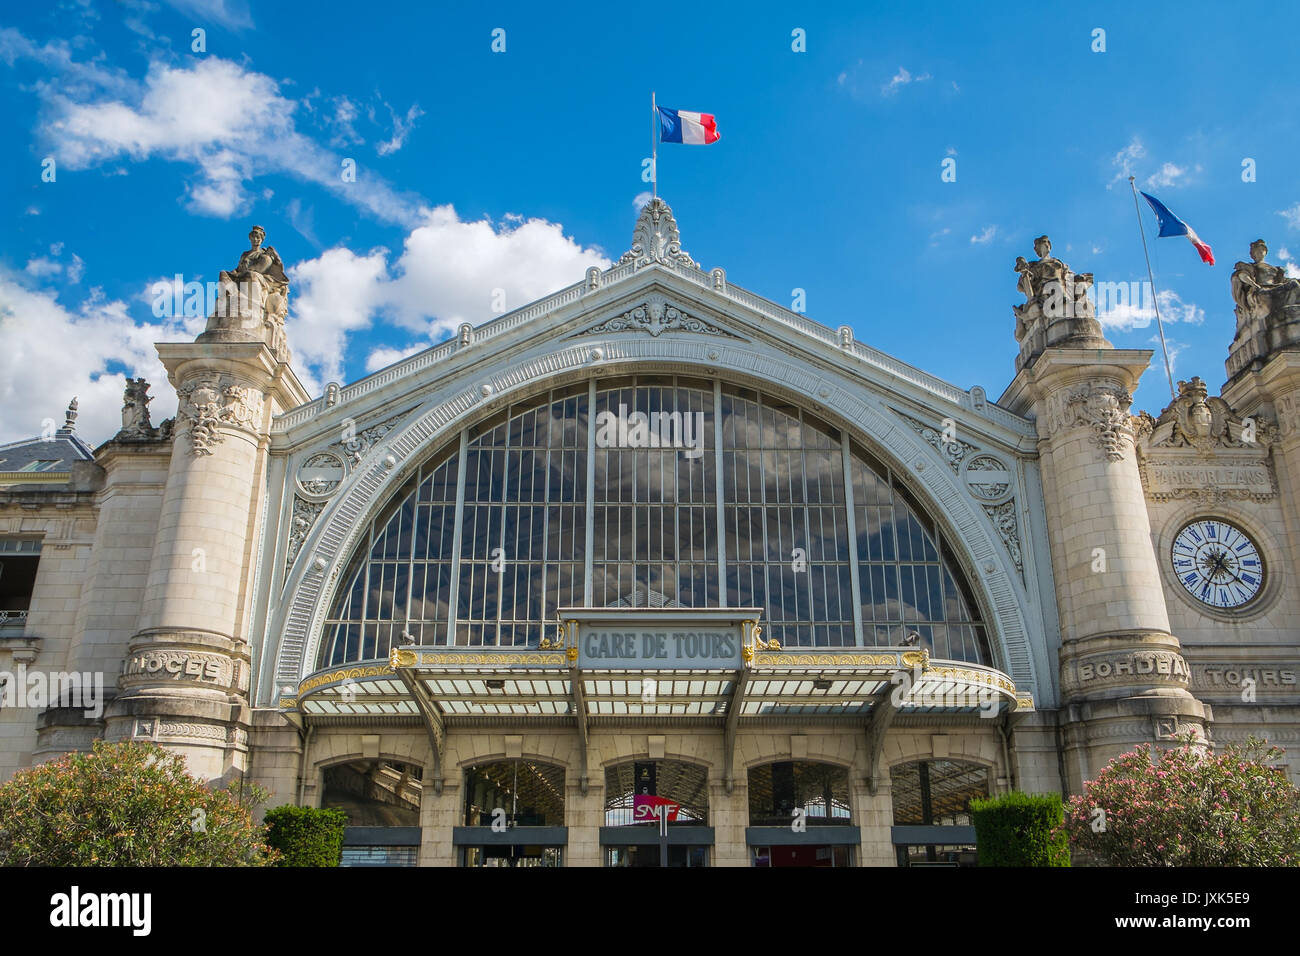 La gare centrale de Tours, Indre-et-Loire, France. Banque D'Images